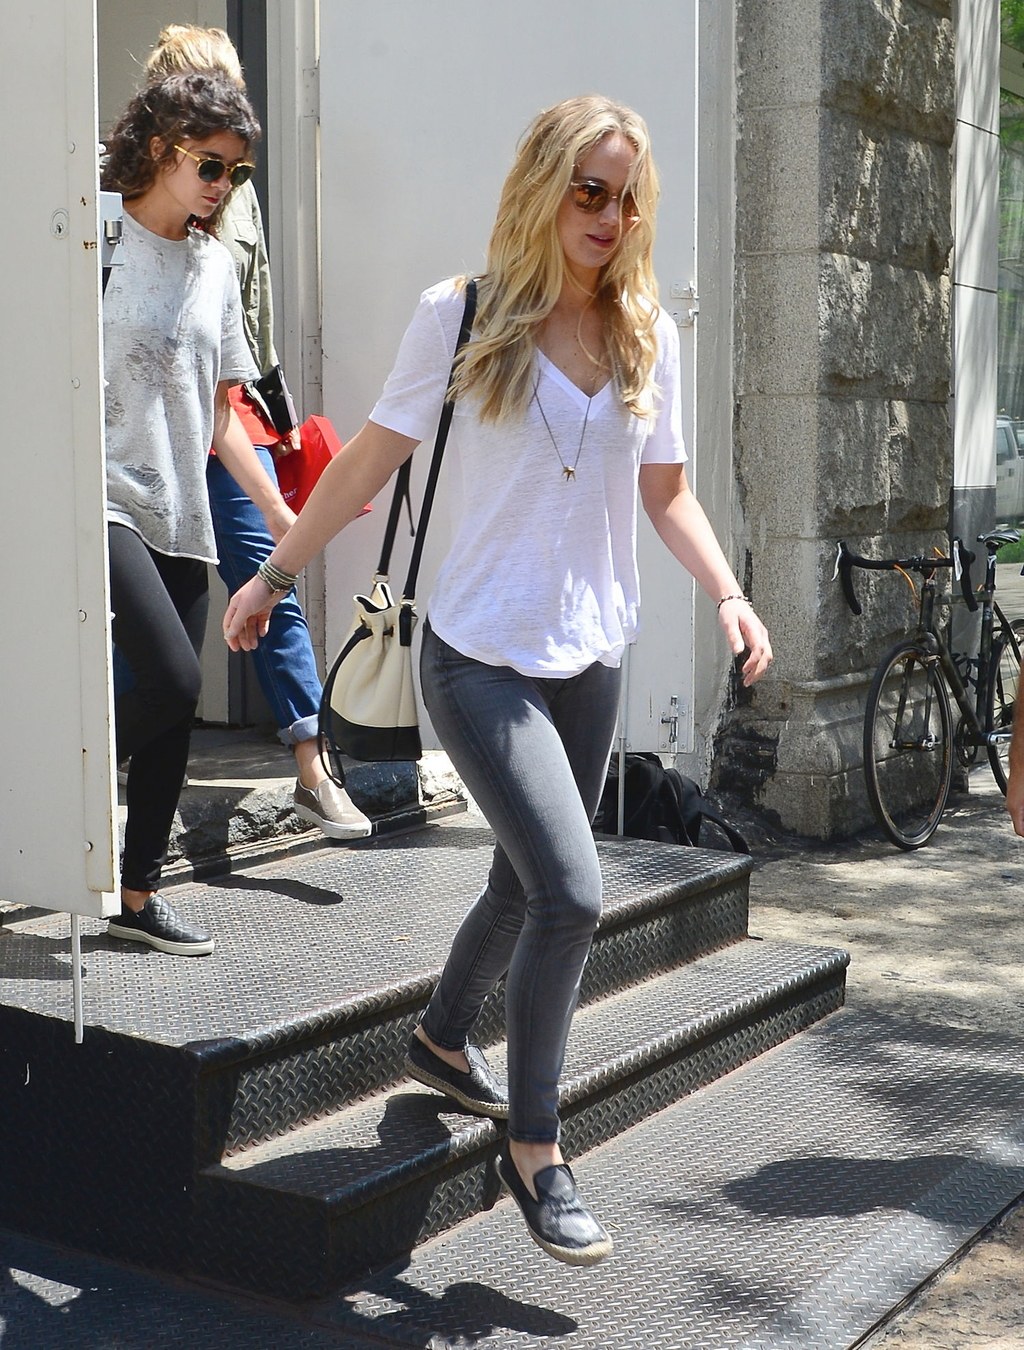 Có những ngày, chỉ cần một chiếc áo pull trắng, quần jean ôm và giày bệt là Jennifer Lawrence đã tự tin xuống phố. Trông cô nàng thật đơn giản và năng động